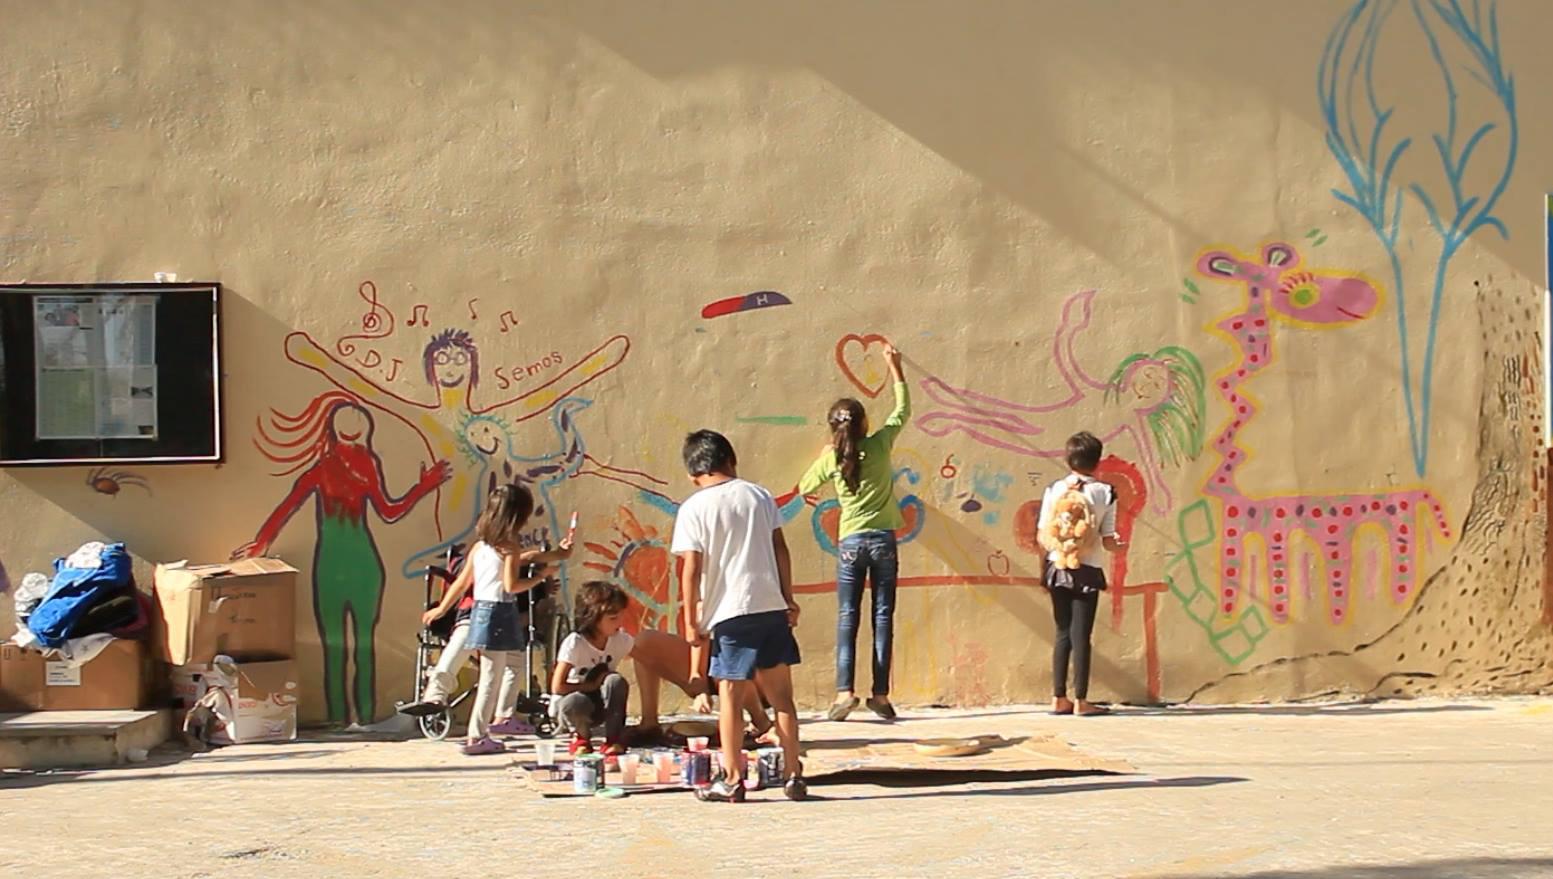 کودکان در پیکپا، کمپ پناهجویان در جزیرۀ لسبوس، دیواری را تزئین میکنند. مددکاران به کودکان کمک میکنند که آنها برای